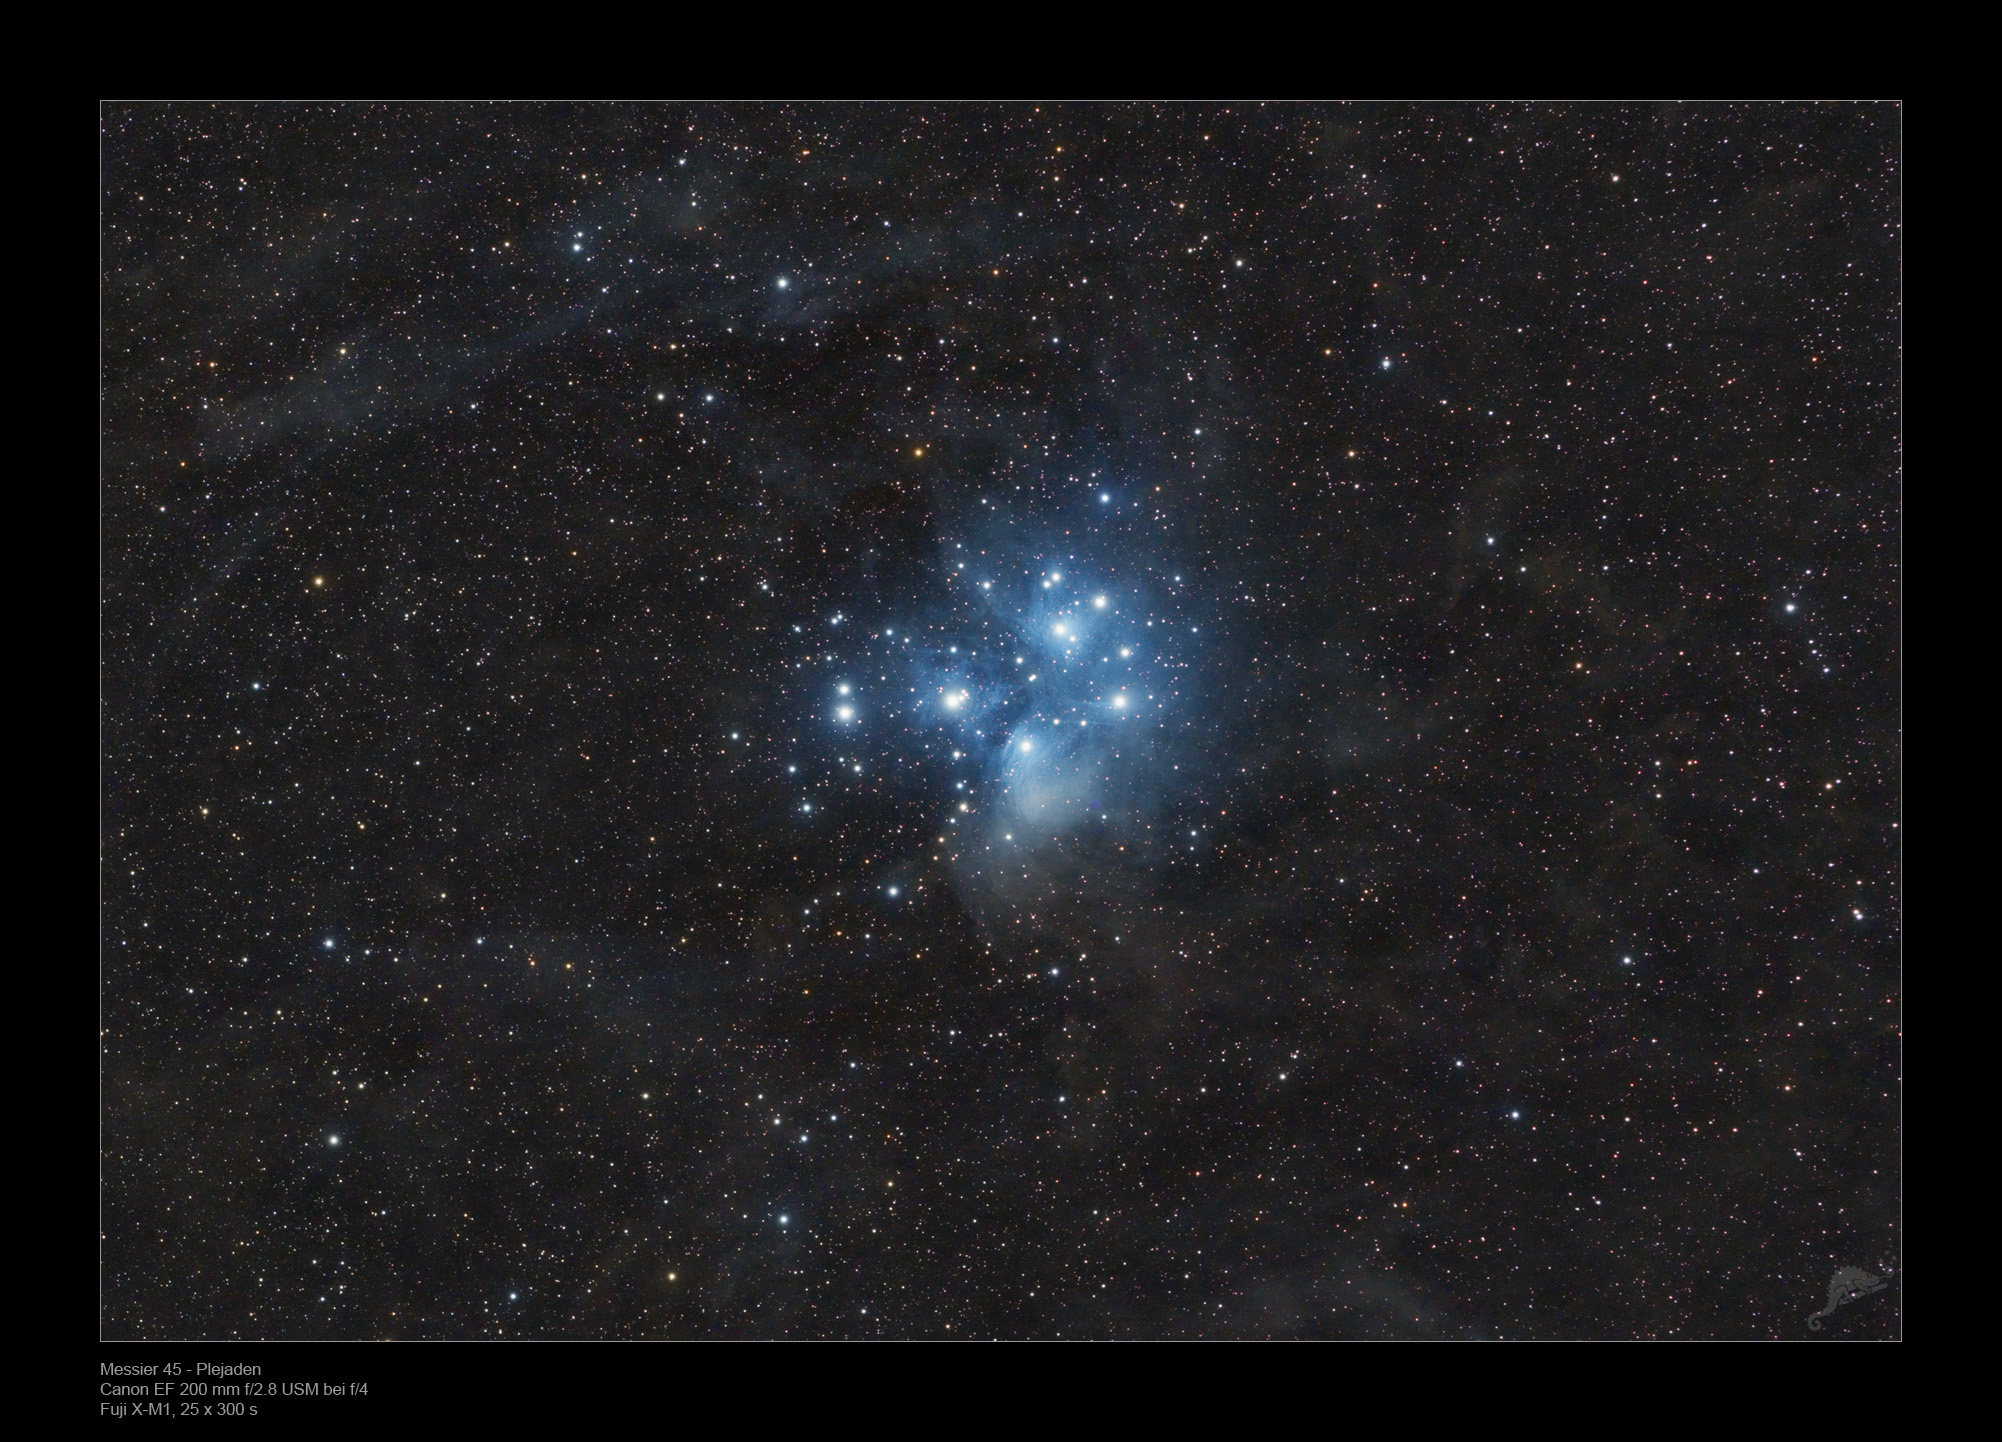 pleiades and orion nebula